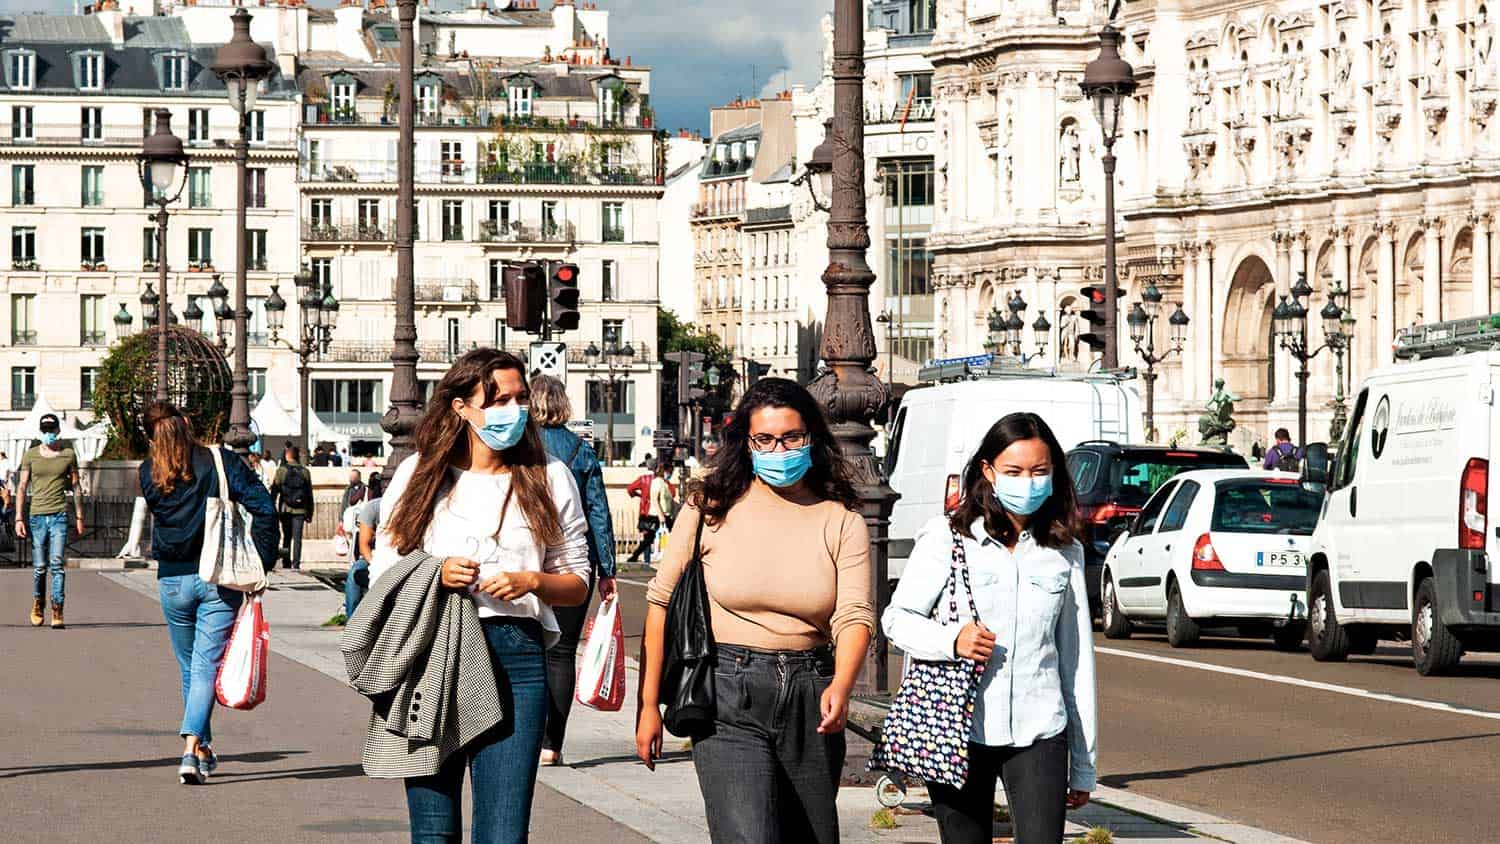 Three women walking down a street all wearing PPE